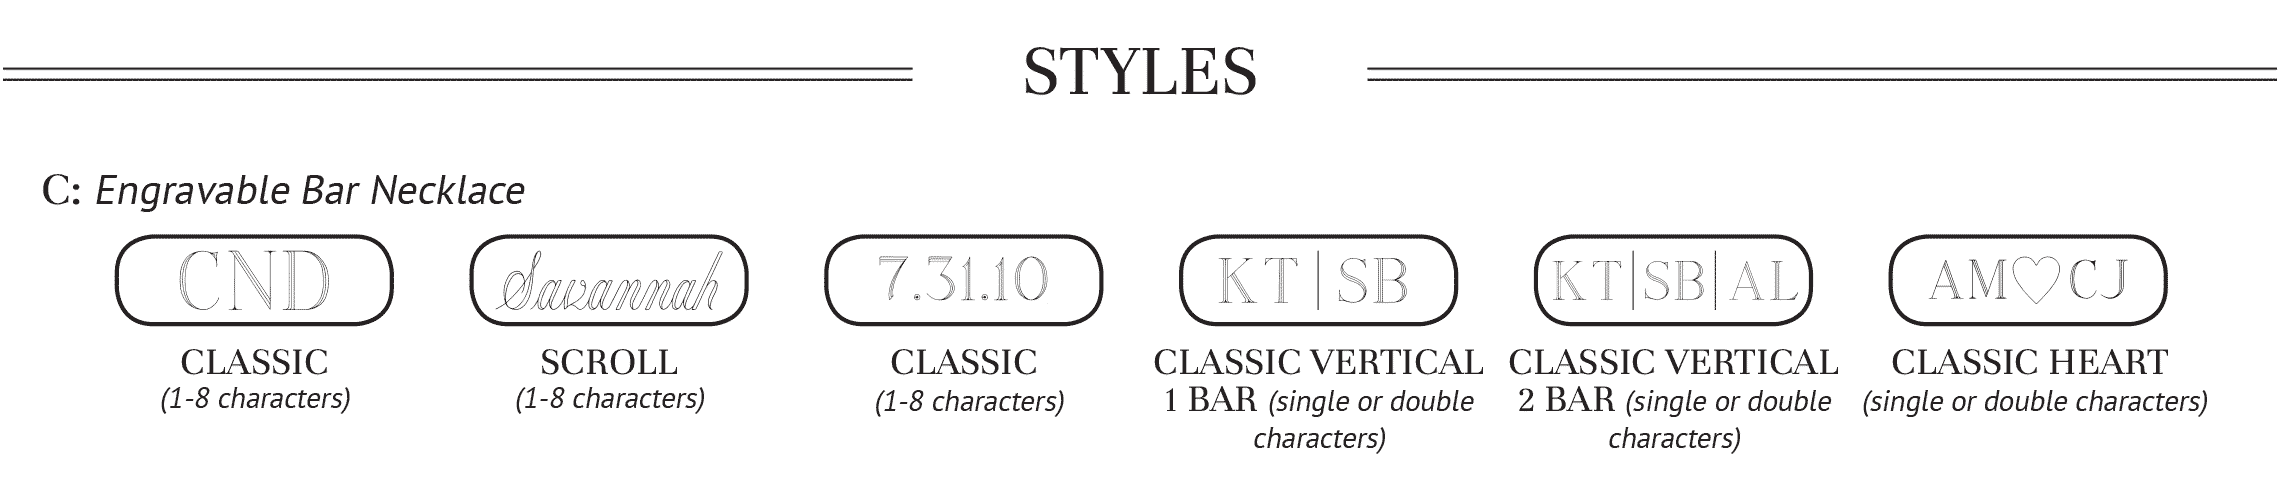 Styles for SS-EN-003